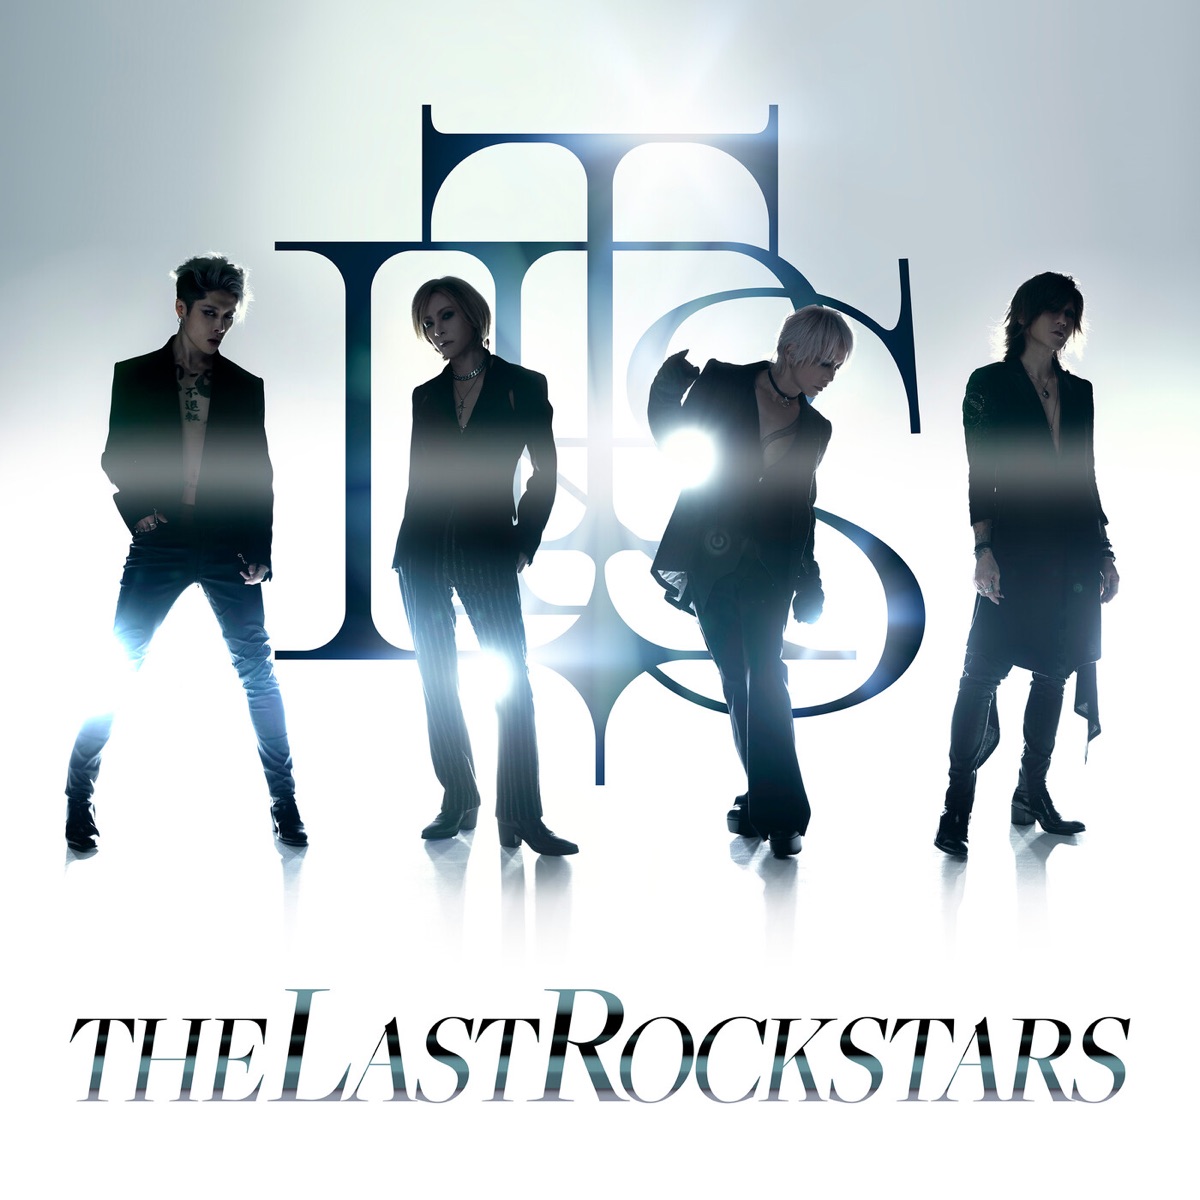 THE LAST ROCKSTARS THE LAST ROCKSTARS (Paris Mix) 歌詞 【歌詞リリ】